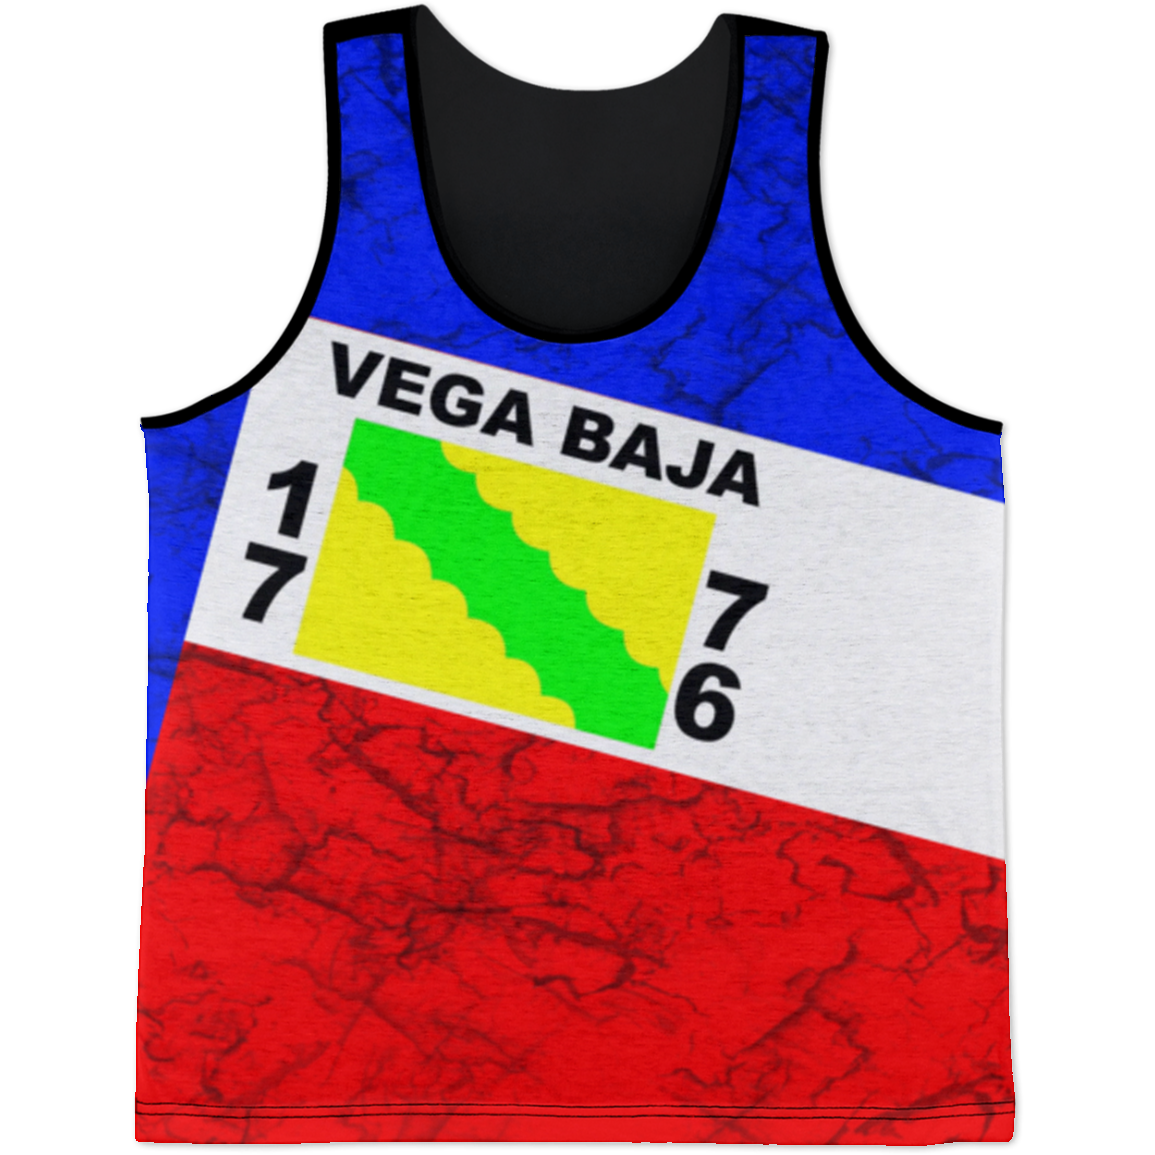 Vega Baja Tank Top - Puerto Rican Pride